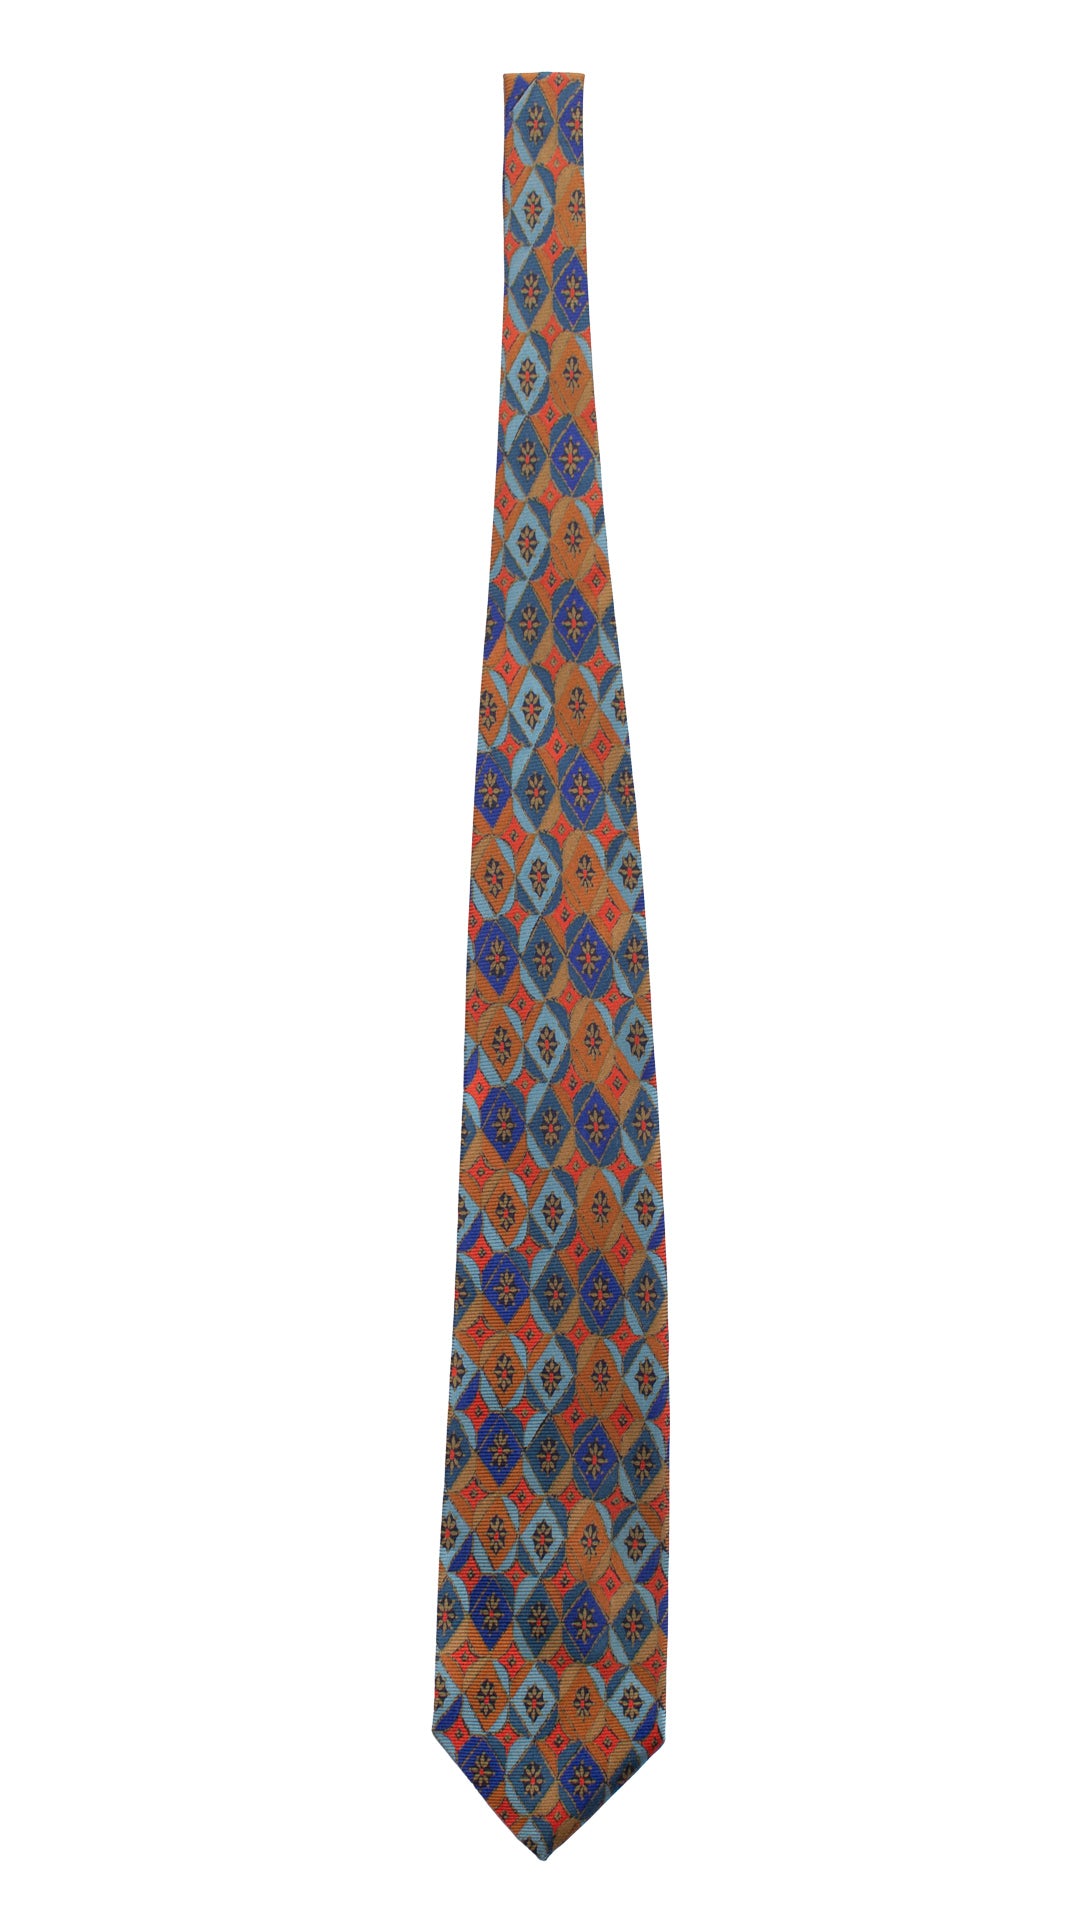 Cravatta Vintage in Saia di Seta Celeste Fantasia Blu Arancione Color Corda CV813 Intera